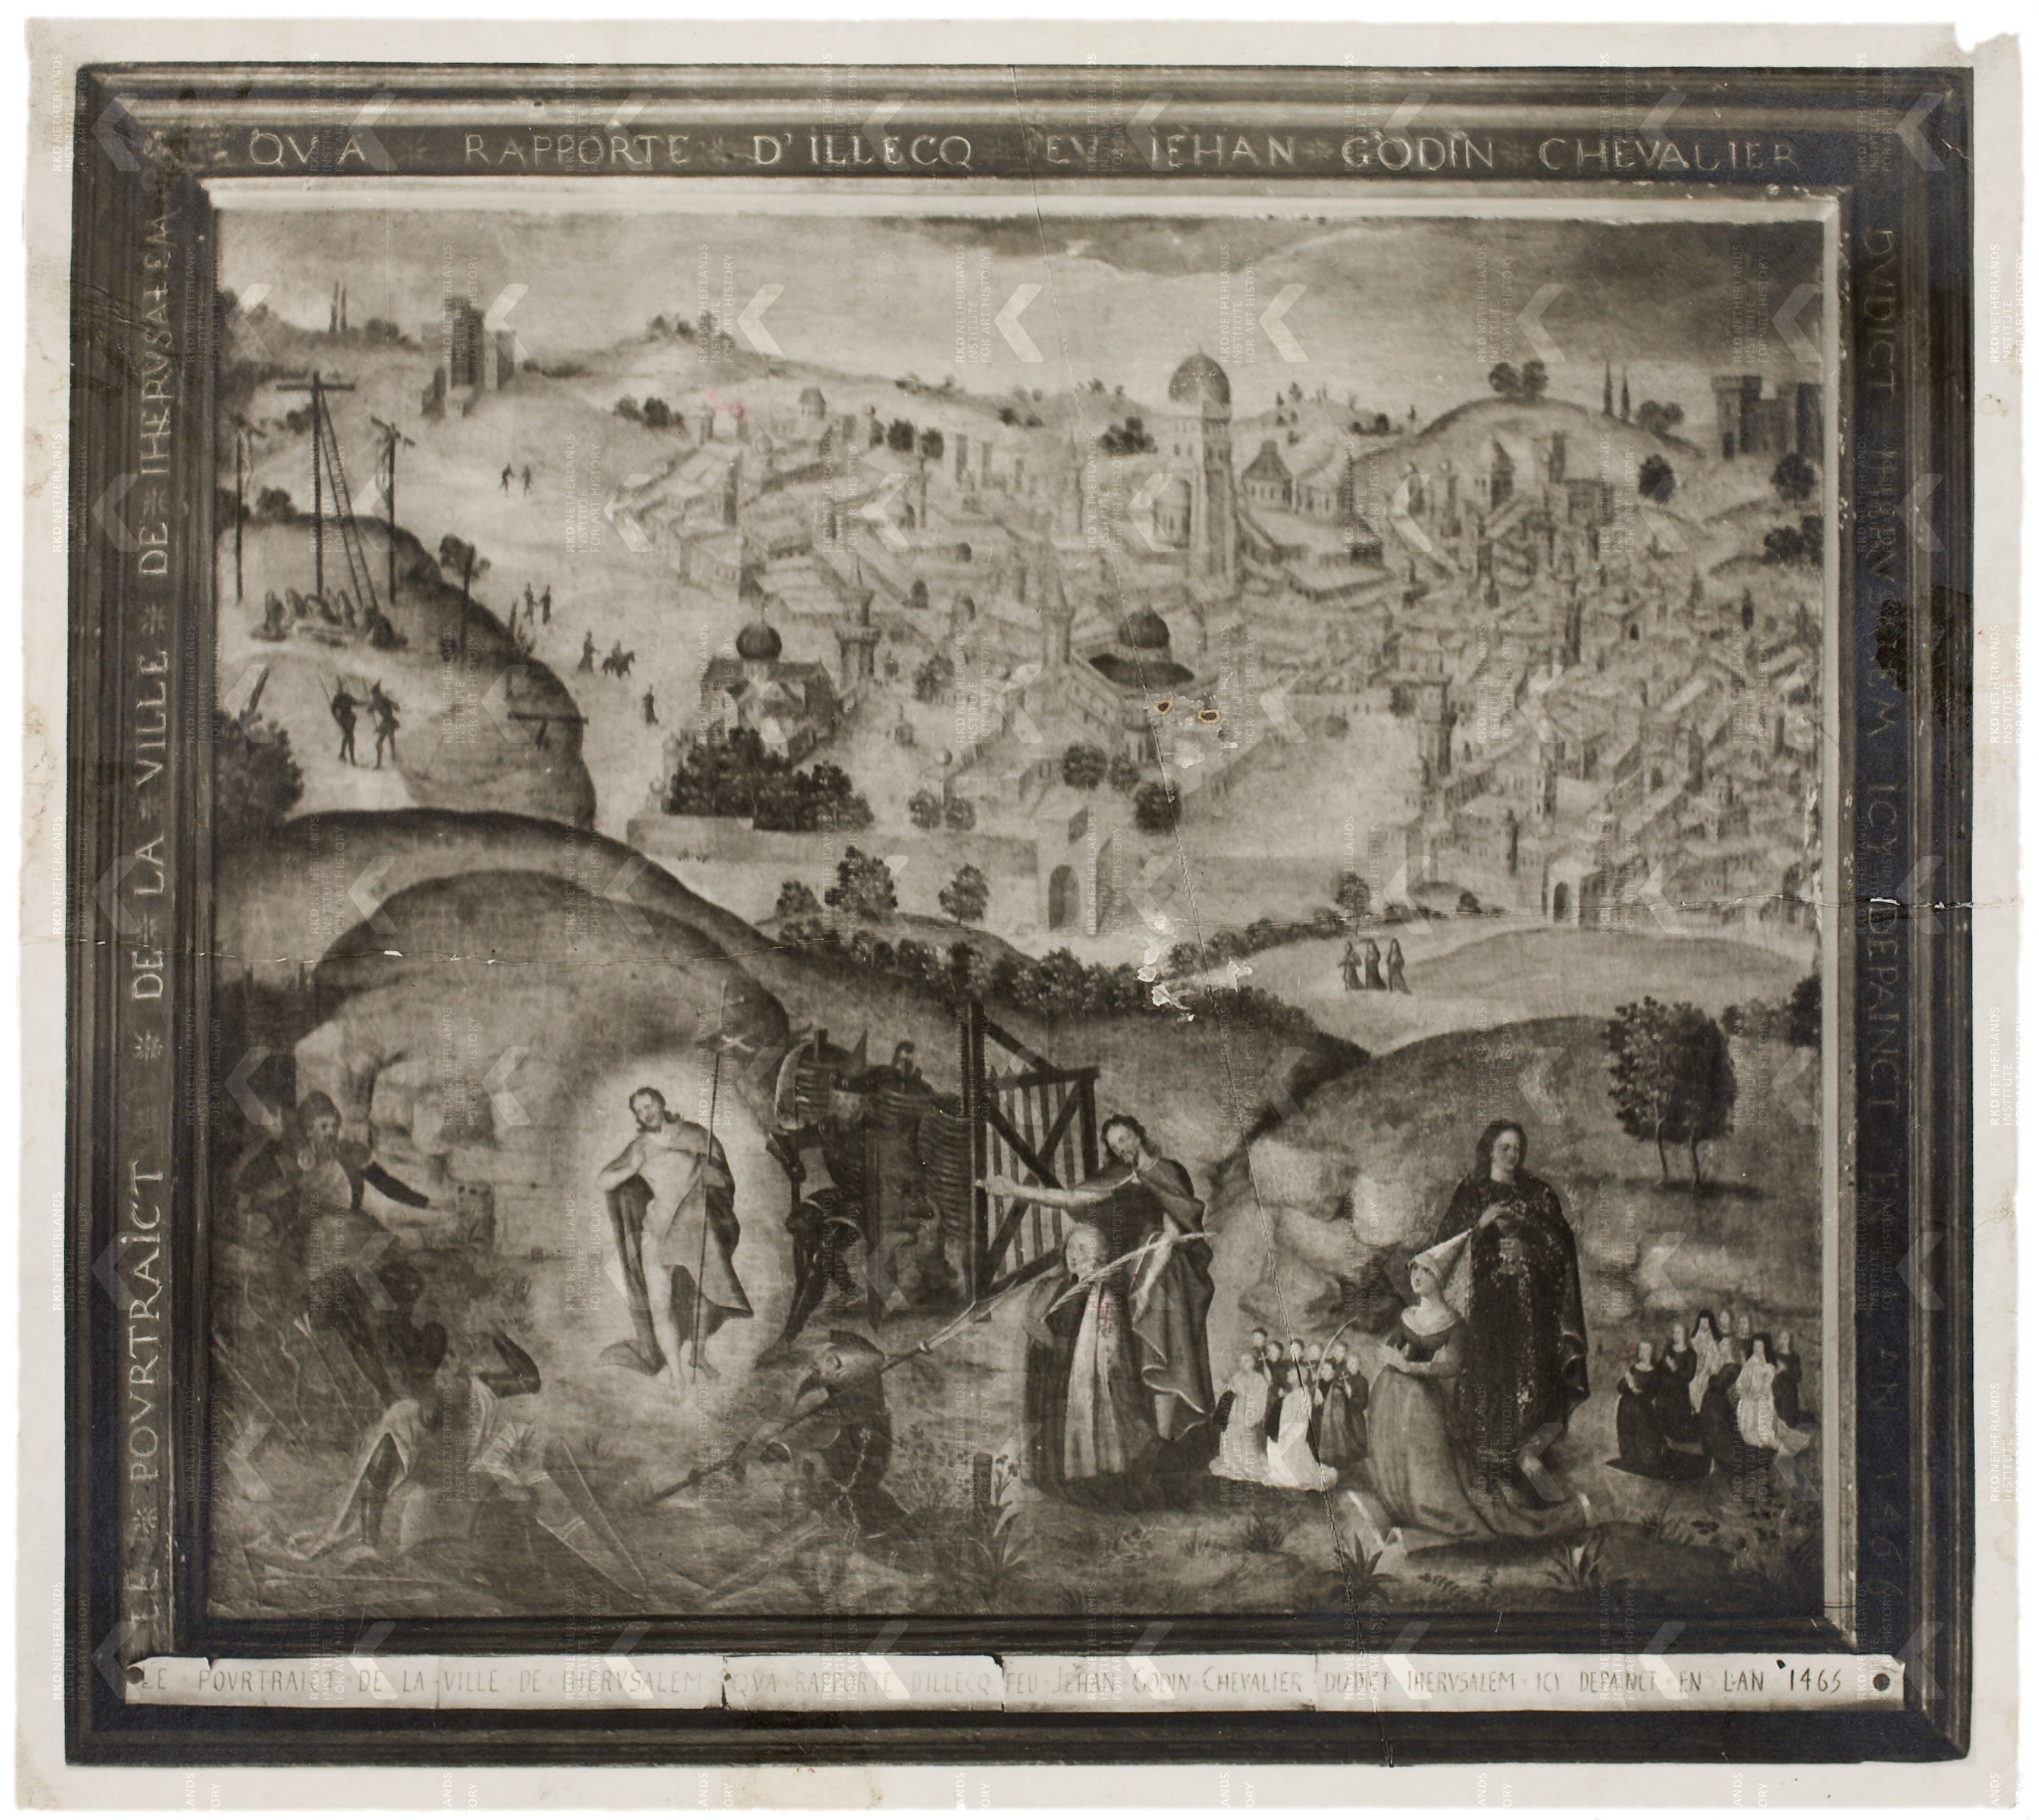 Le pourtraict de la ville de Iherusalem, qua rapporte d'illecq feu Jehan Godin chevalier du dict Iherusalem, icy dépainct en l'an 1465 coll privee anonyme